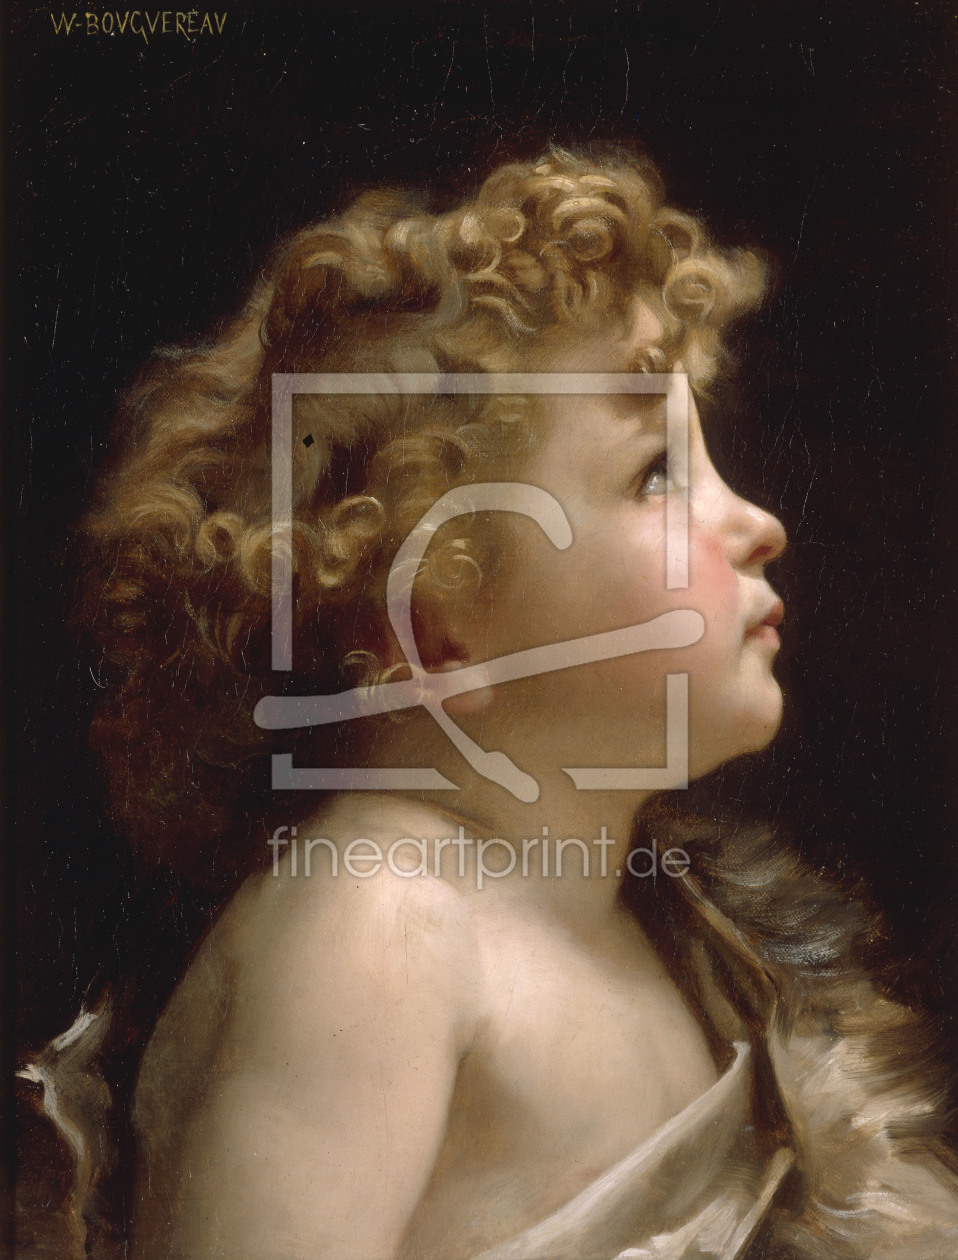 Bild-Nr.: 30008715 W,Bouguereau, Young John the Baptist. erstellt von Bouguereau, William Adolphe